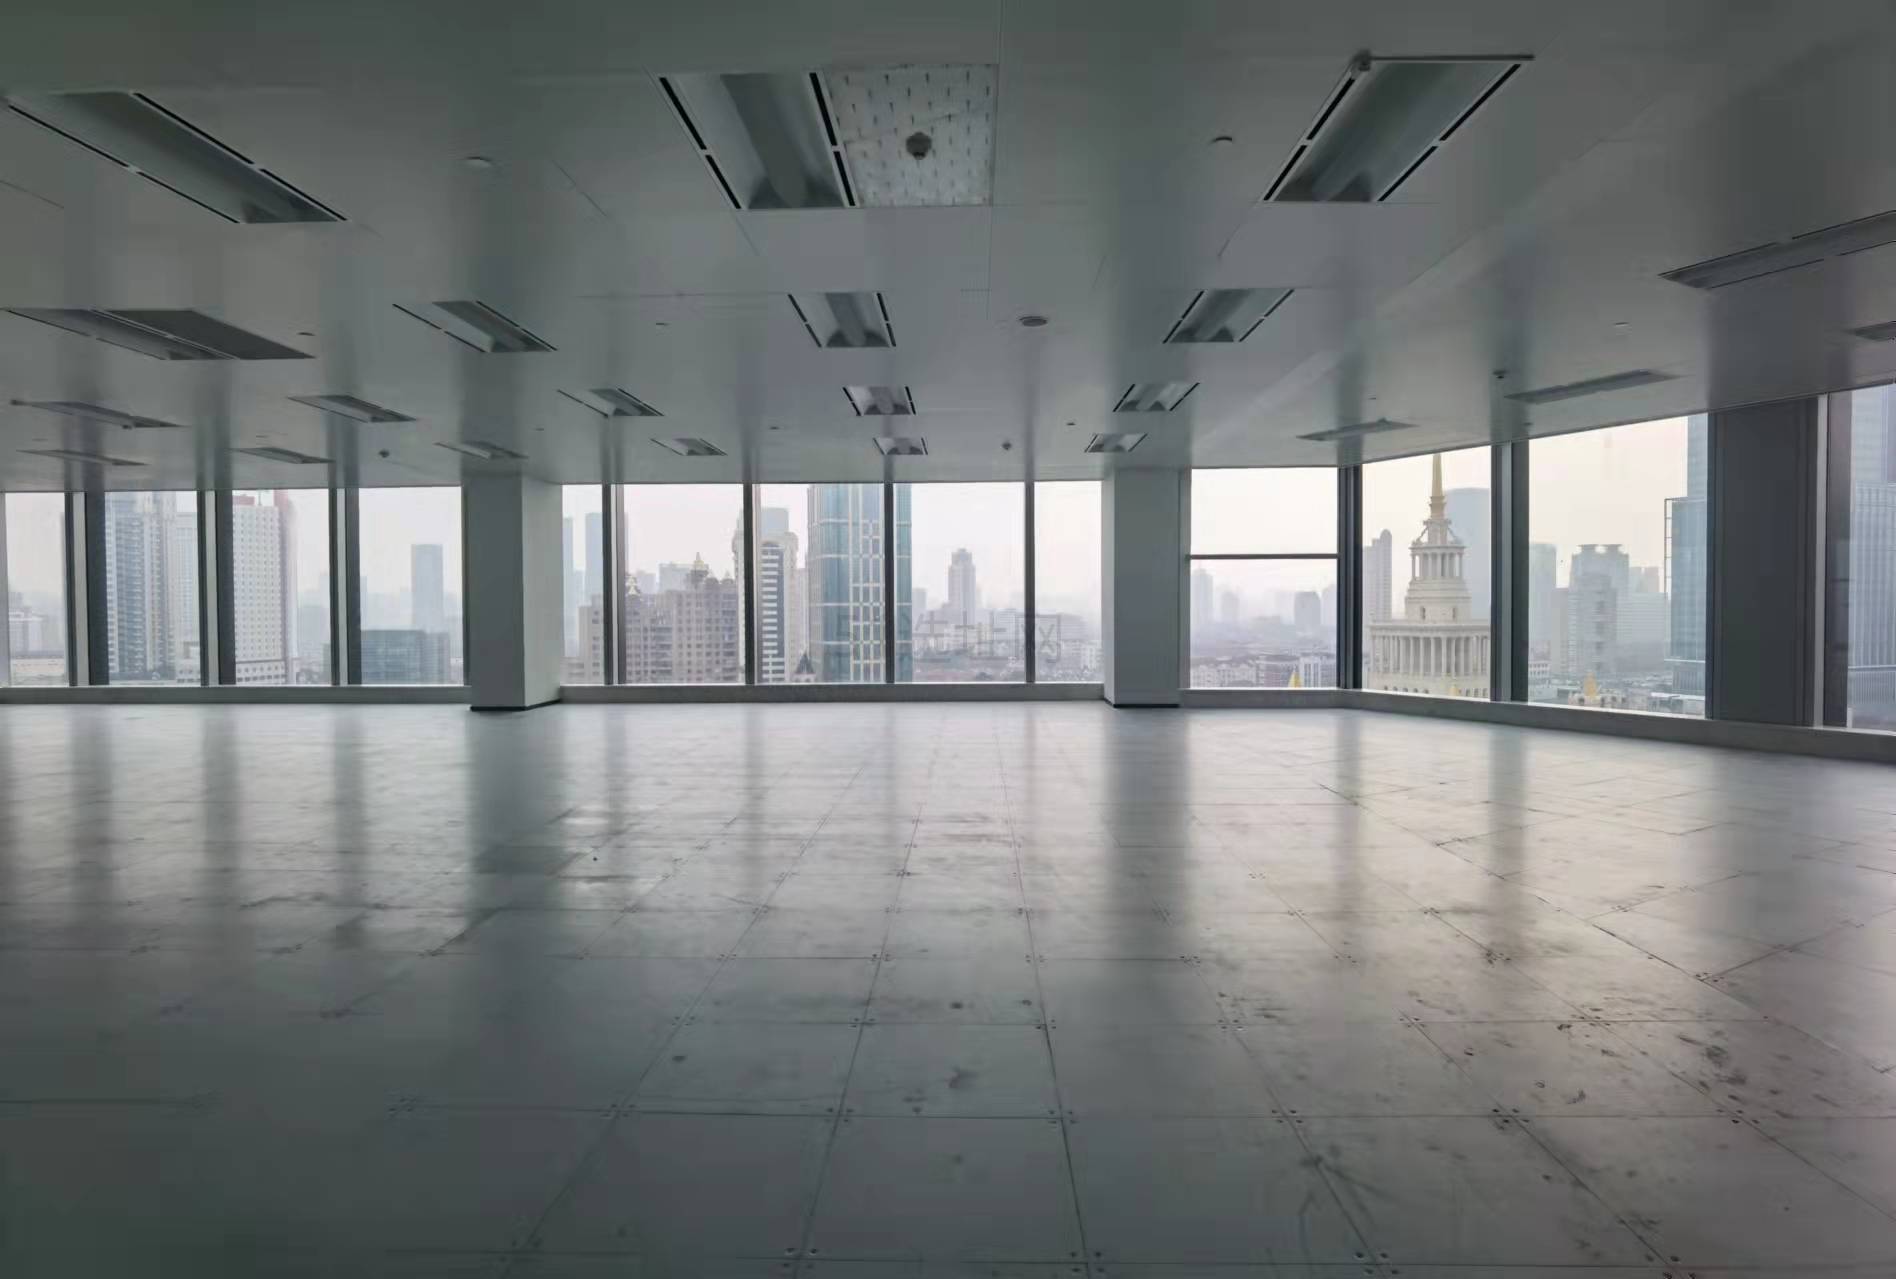 锦沧文华广场2100平整层面积总部首选金级认证办公楼